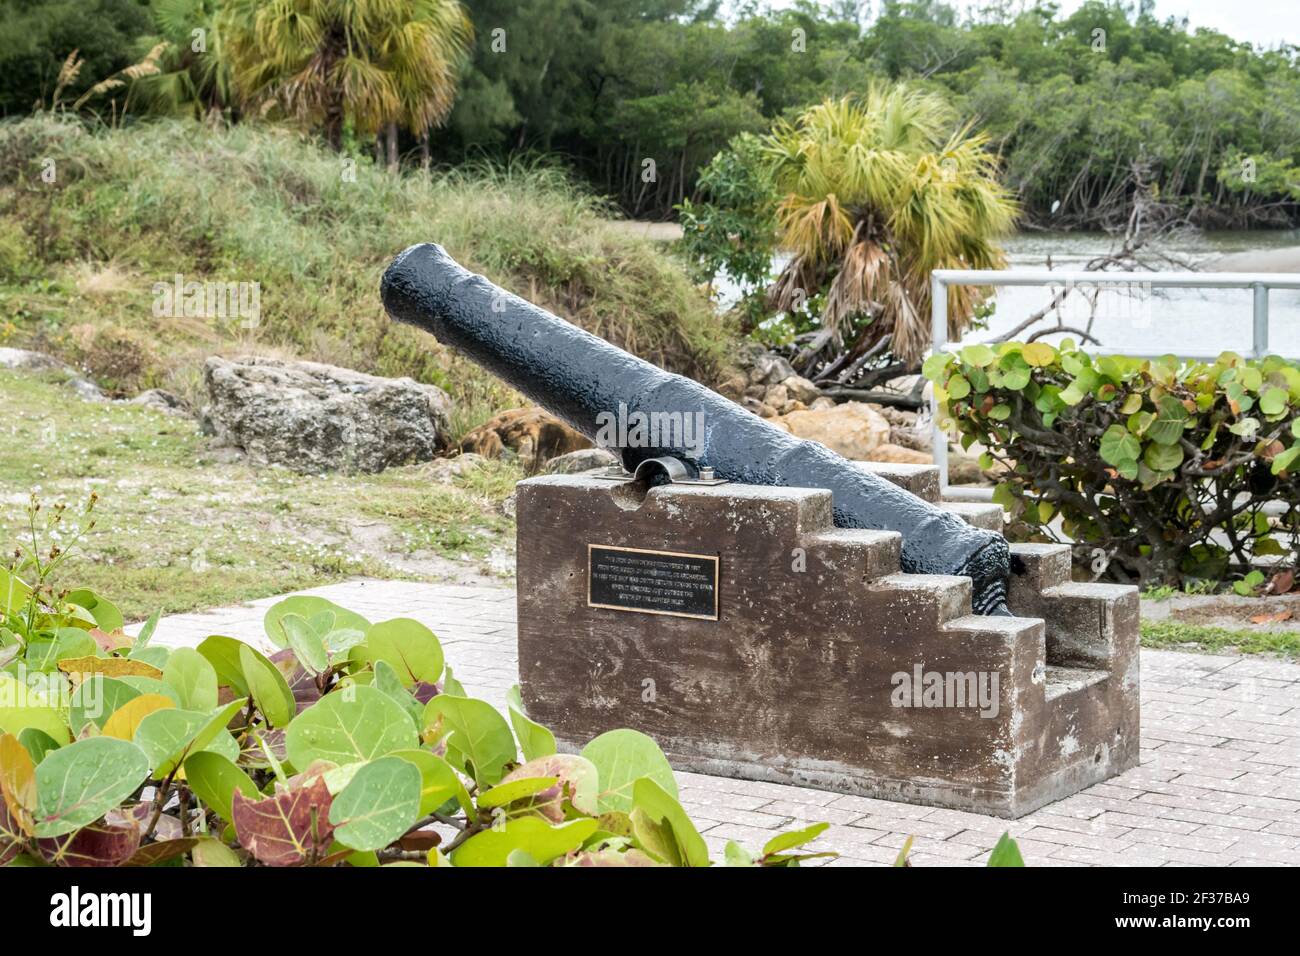 Marina et parc avec palmiers, herbe, eau dans le comté de Palm Beach, Floride partie de la Floride poissons et faune avec trottoir, promenades et pont Banque D'Images